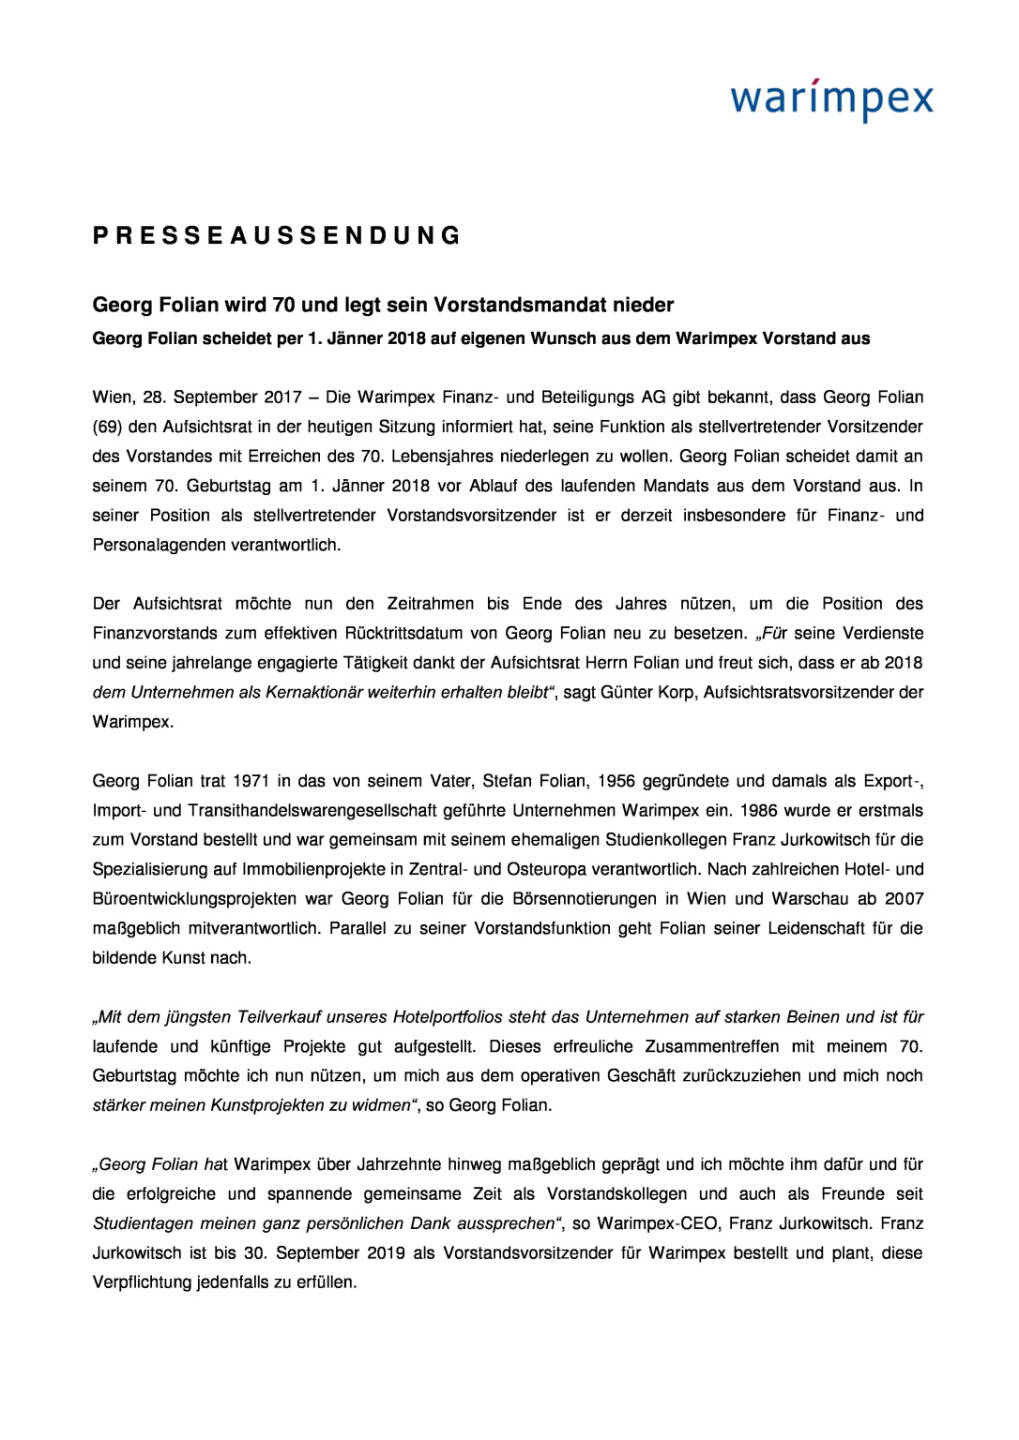 Warimpex: Georg Folian wird 70 und legt sein Vorstandsmandat nieder, Seite 1/2, komplettes Dokument unter http://boerse-social.com/static/uploads/file_2351_warimpex_georg_folian_wird_70_und_legt_sein_vorstandsmandat_nieder.pdf